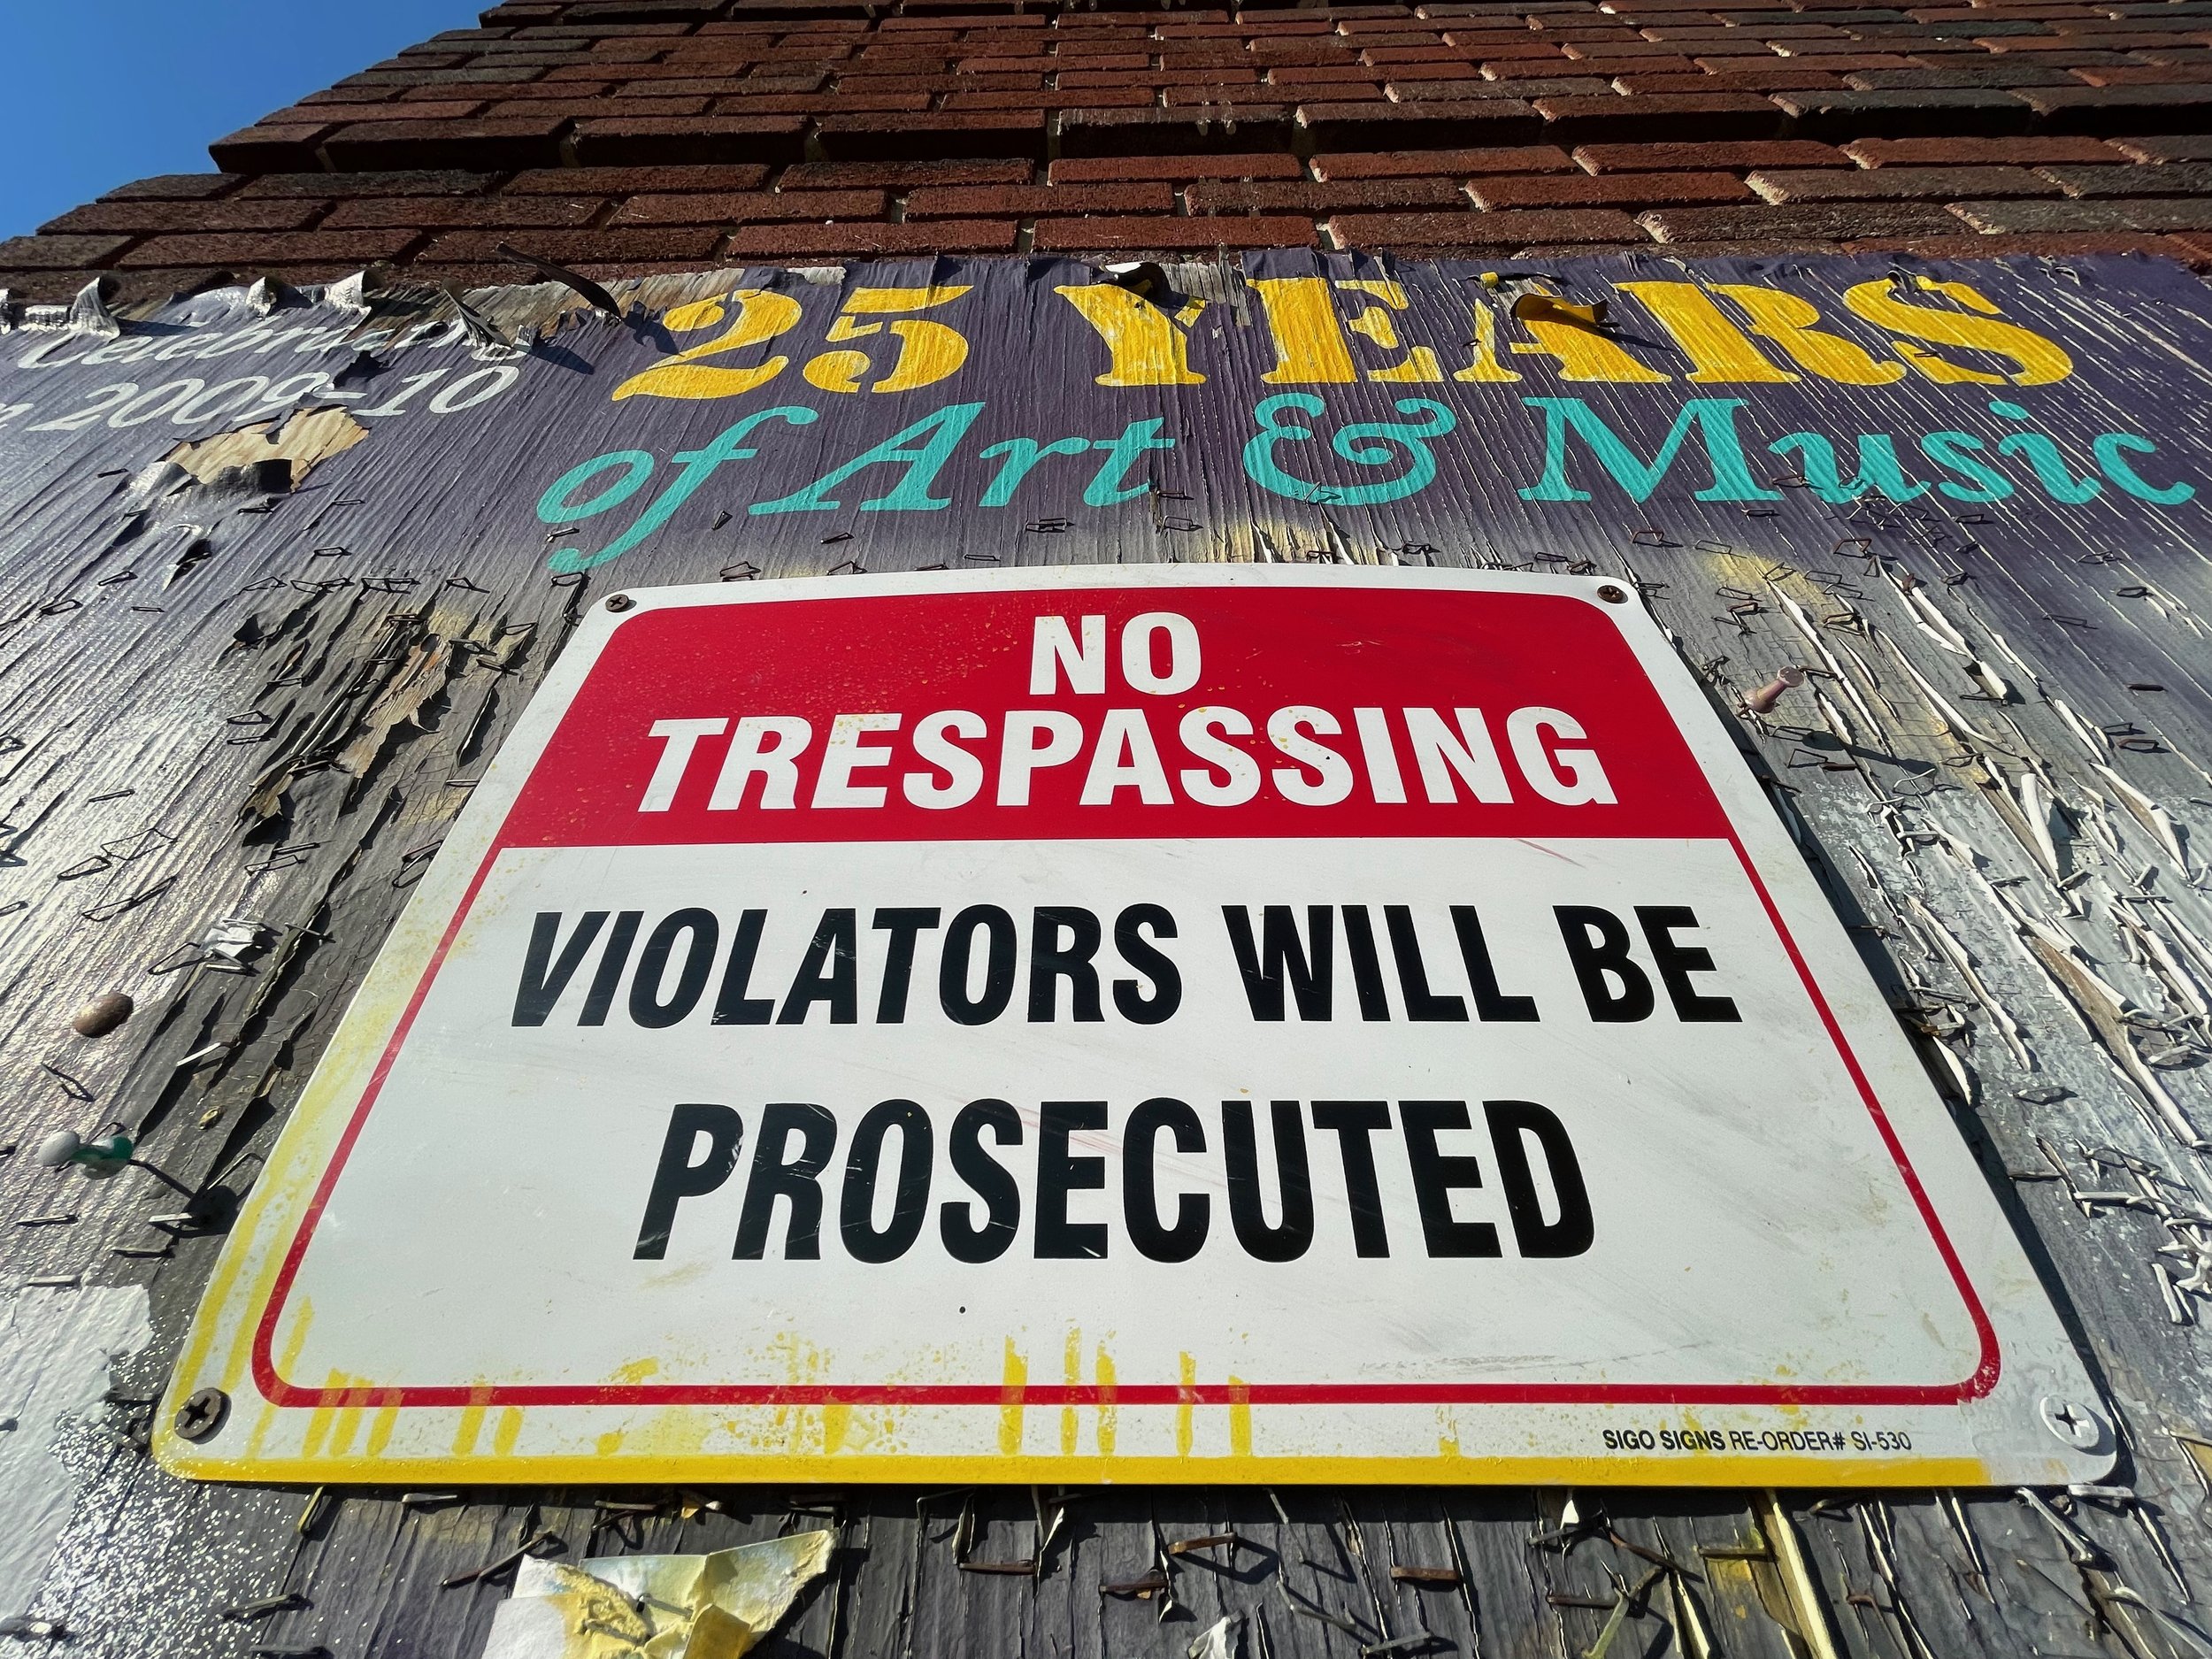 242 Main, "No Trespassing"